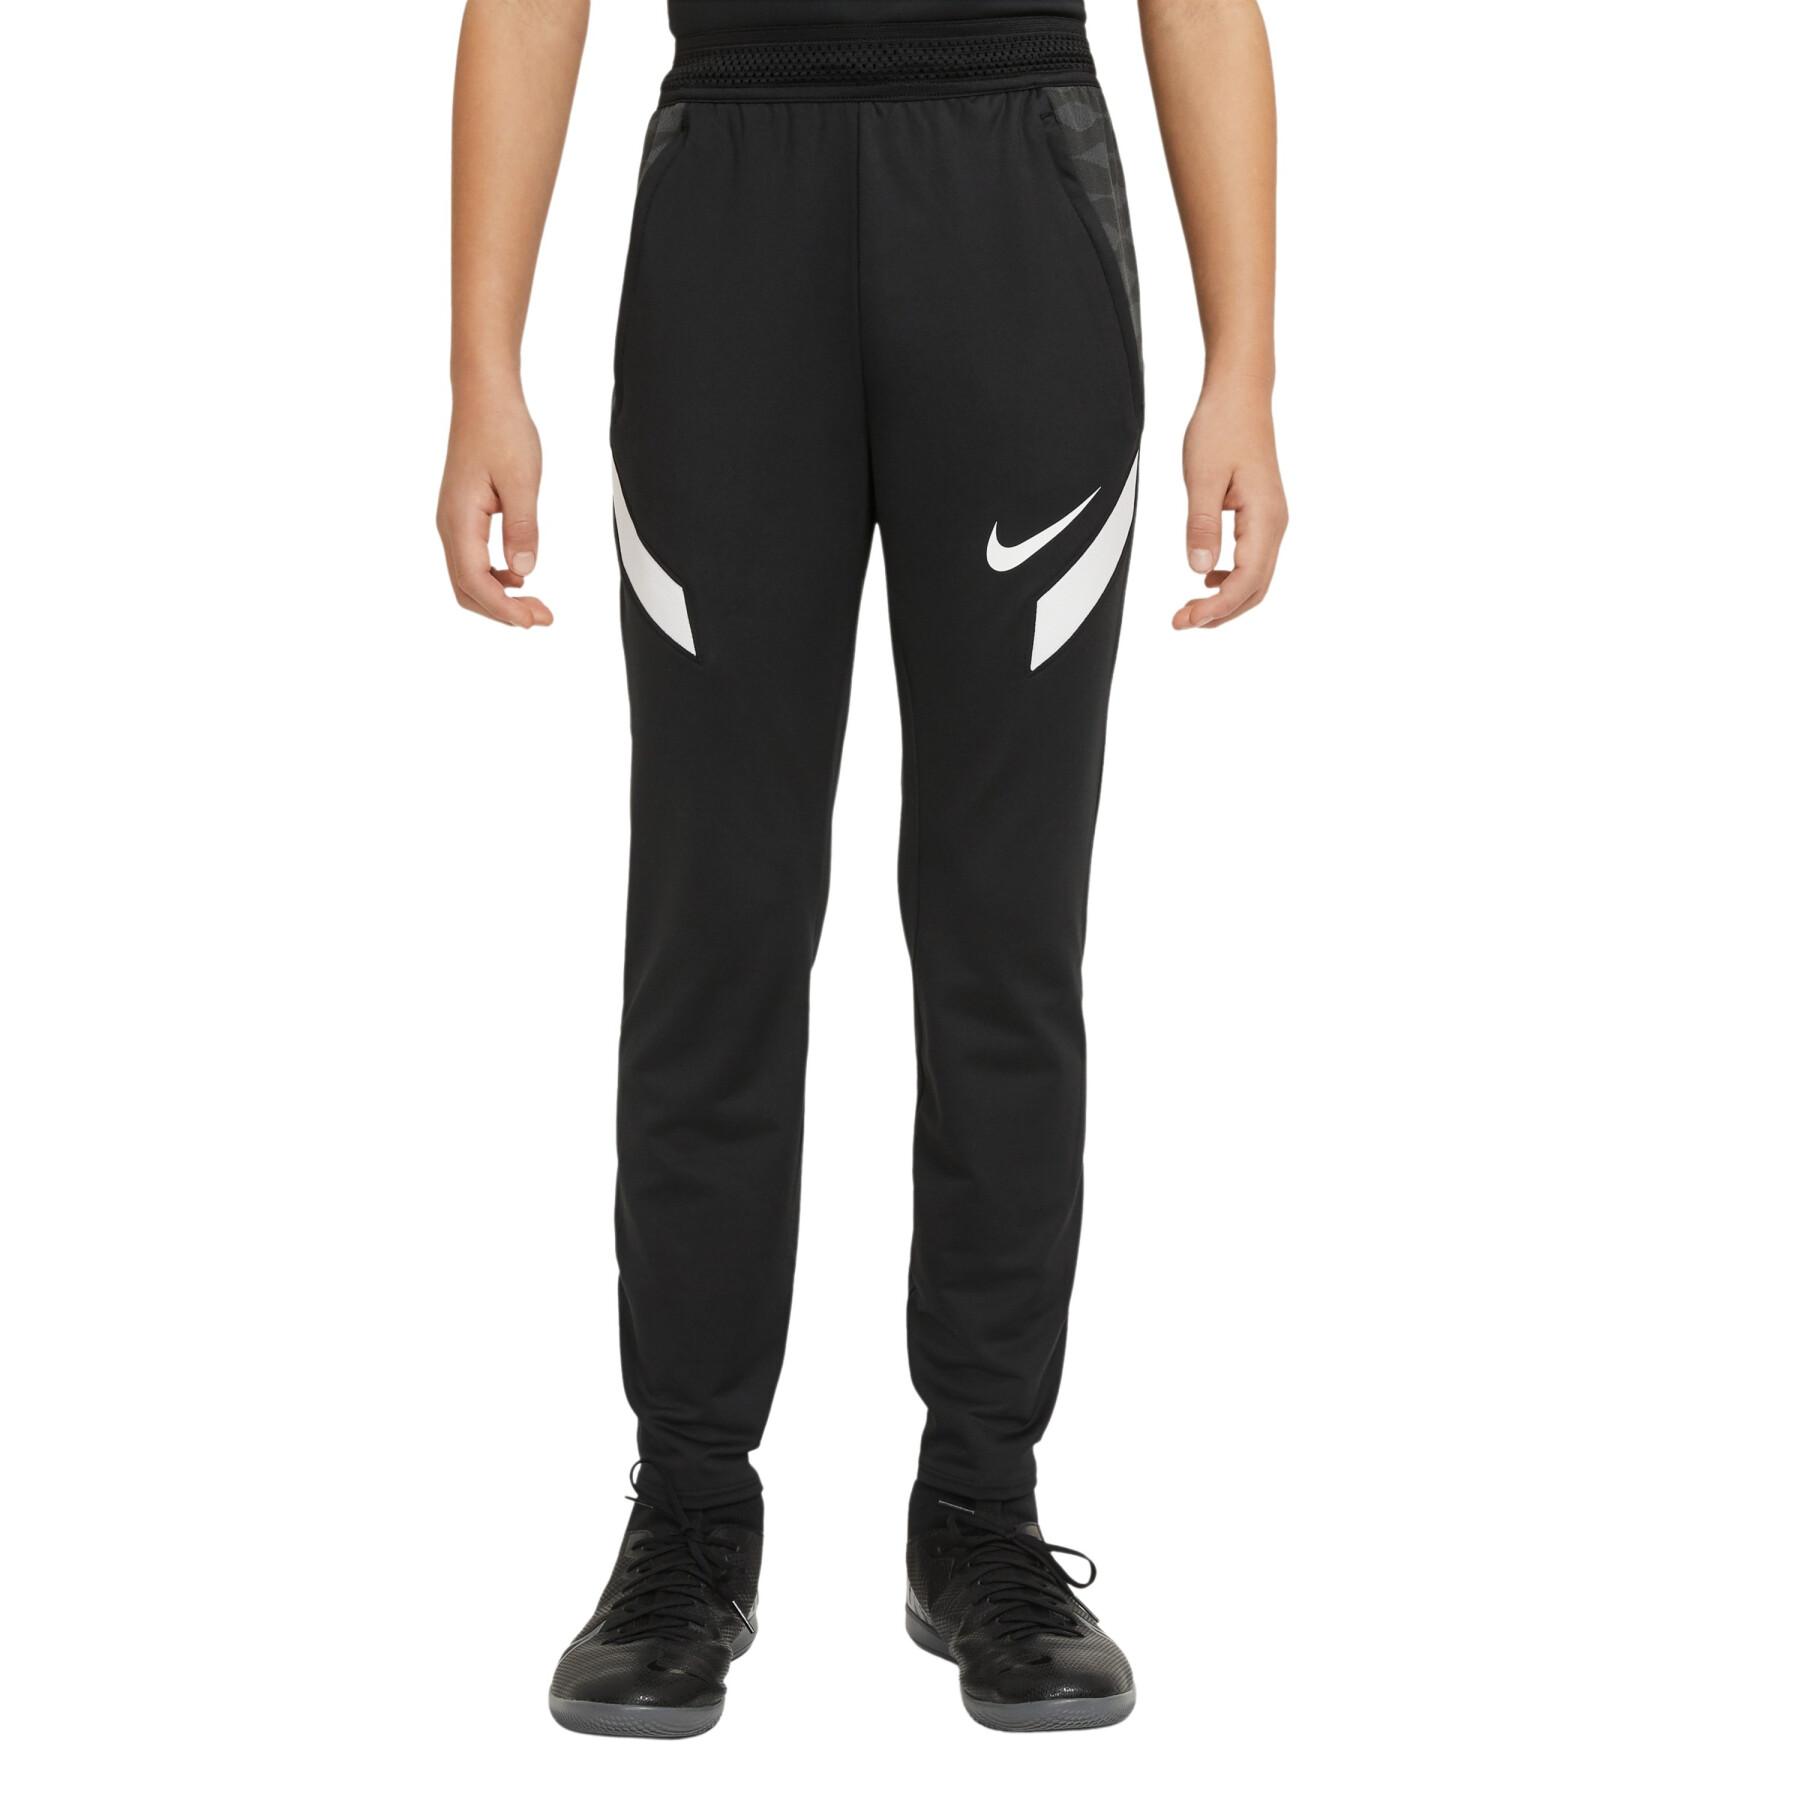 Spodnie dziecięce Nike Dynamic Fit StrikeE21